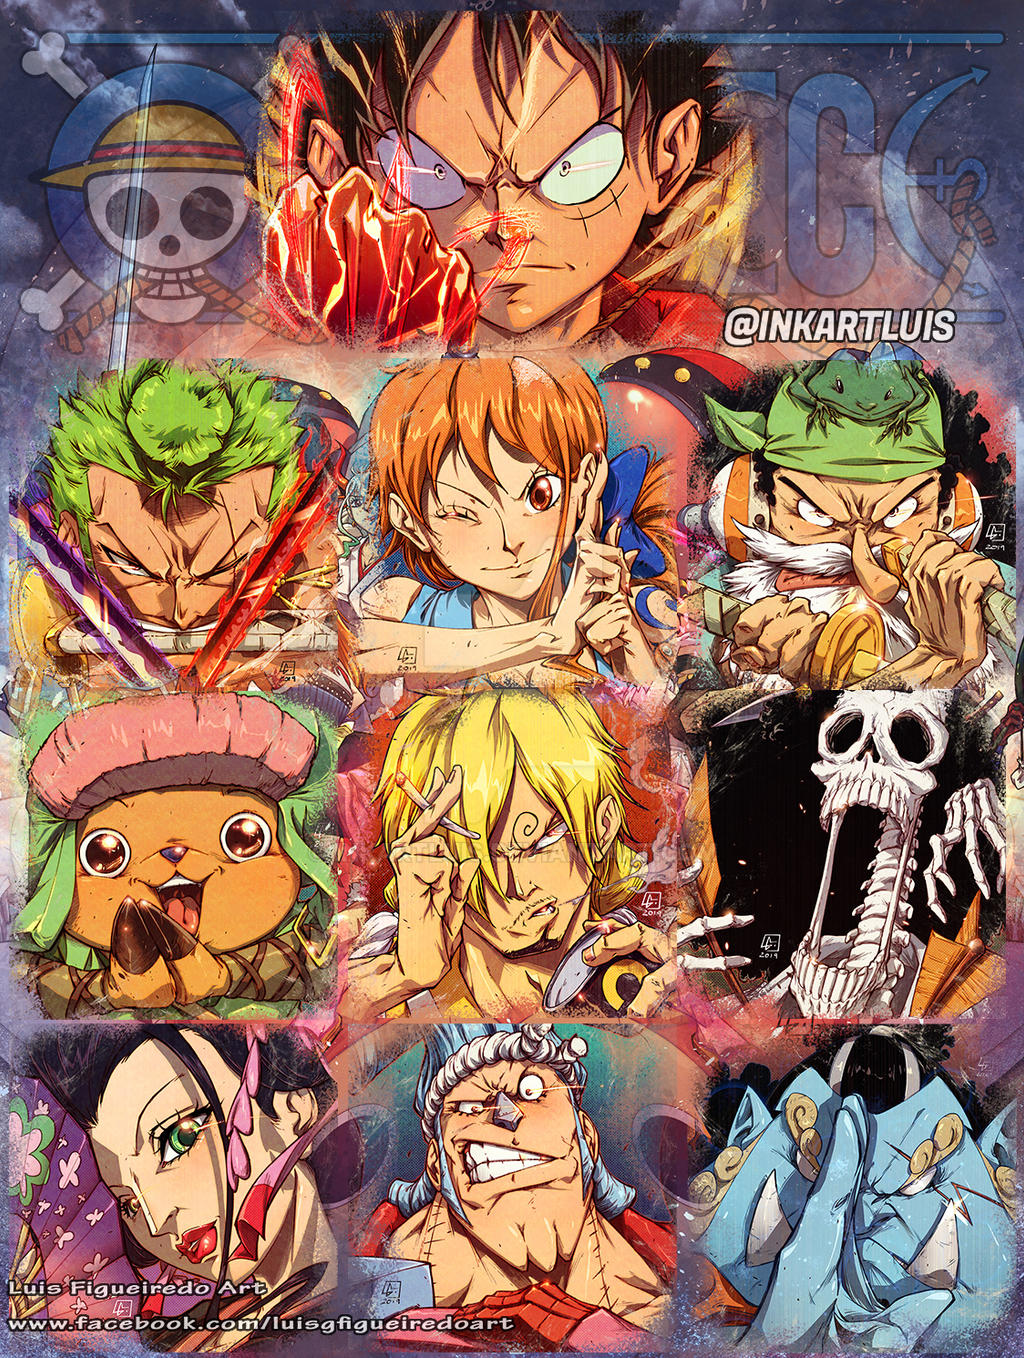 Best Anime Like One Piece